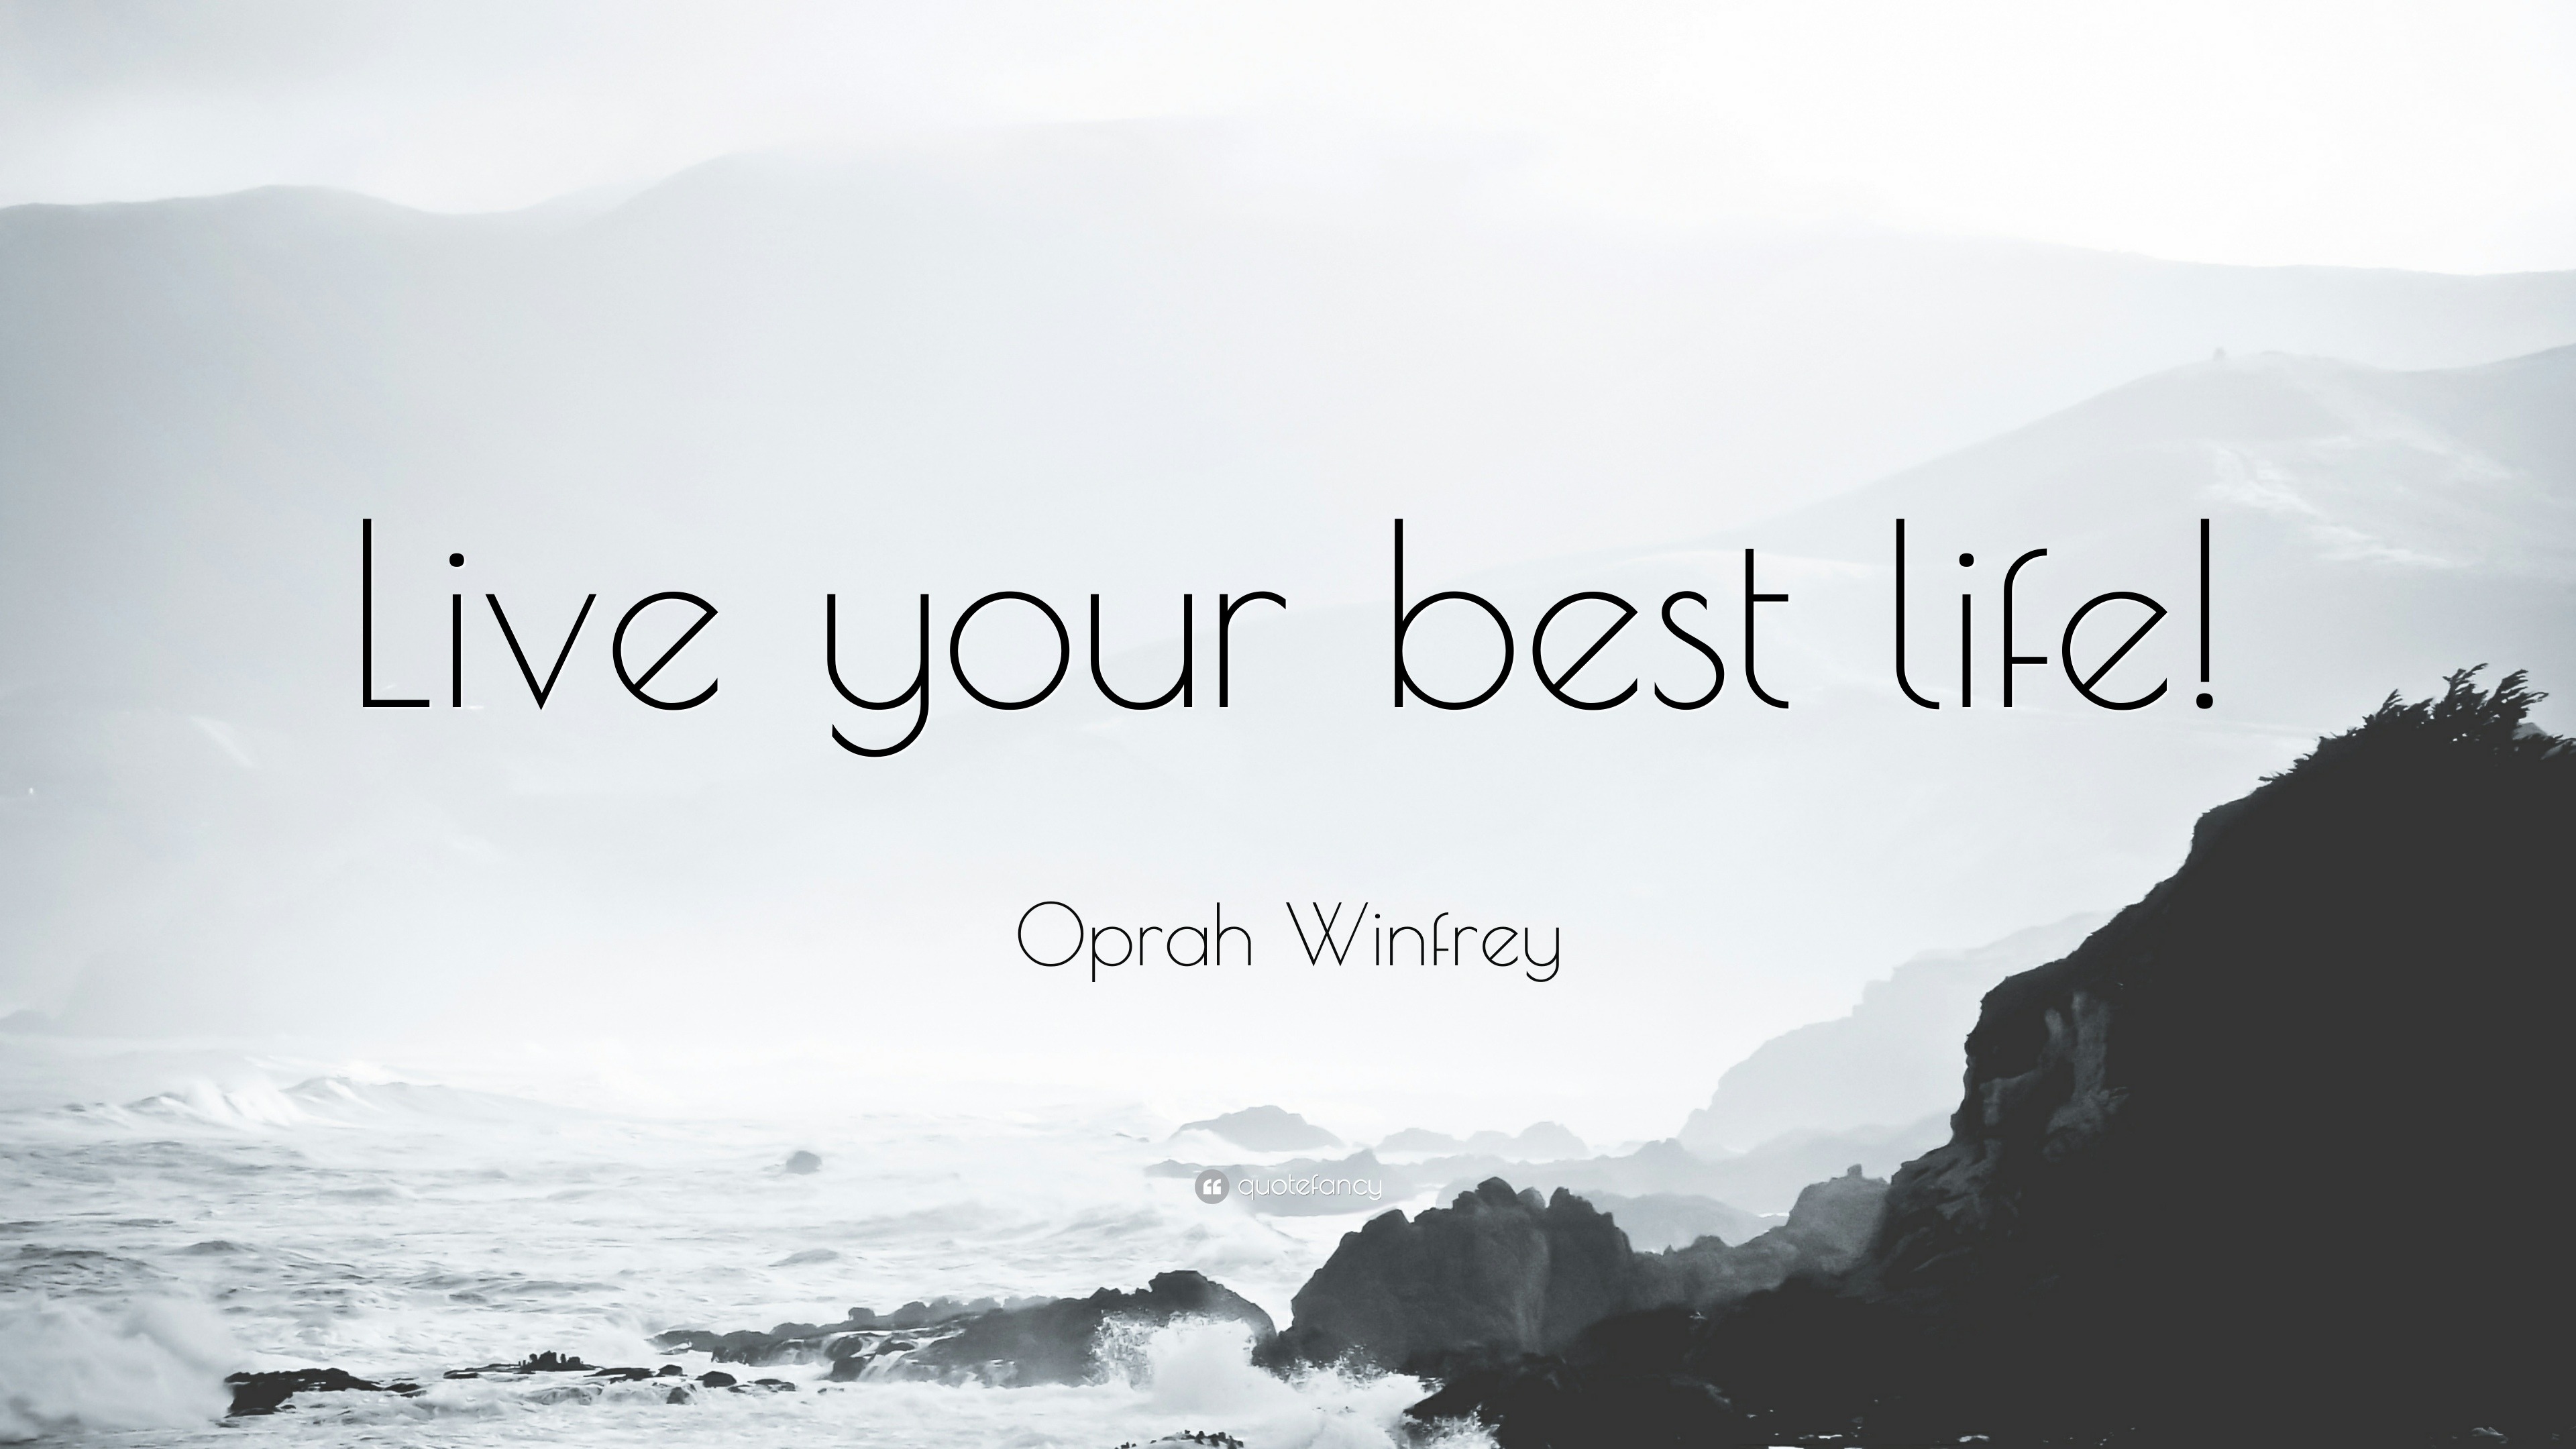 https://quotefancy.com/media/wallpaper/3840x2160/1698886-Oprah-Winfrey-Quote-Live-your-best-life.jpg